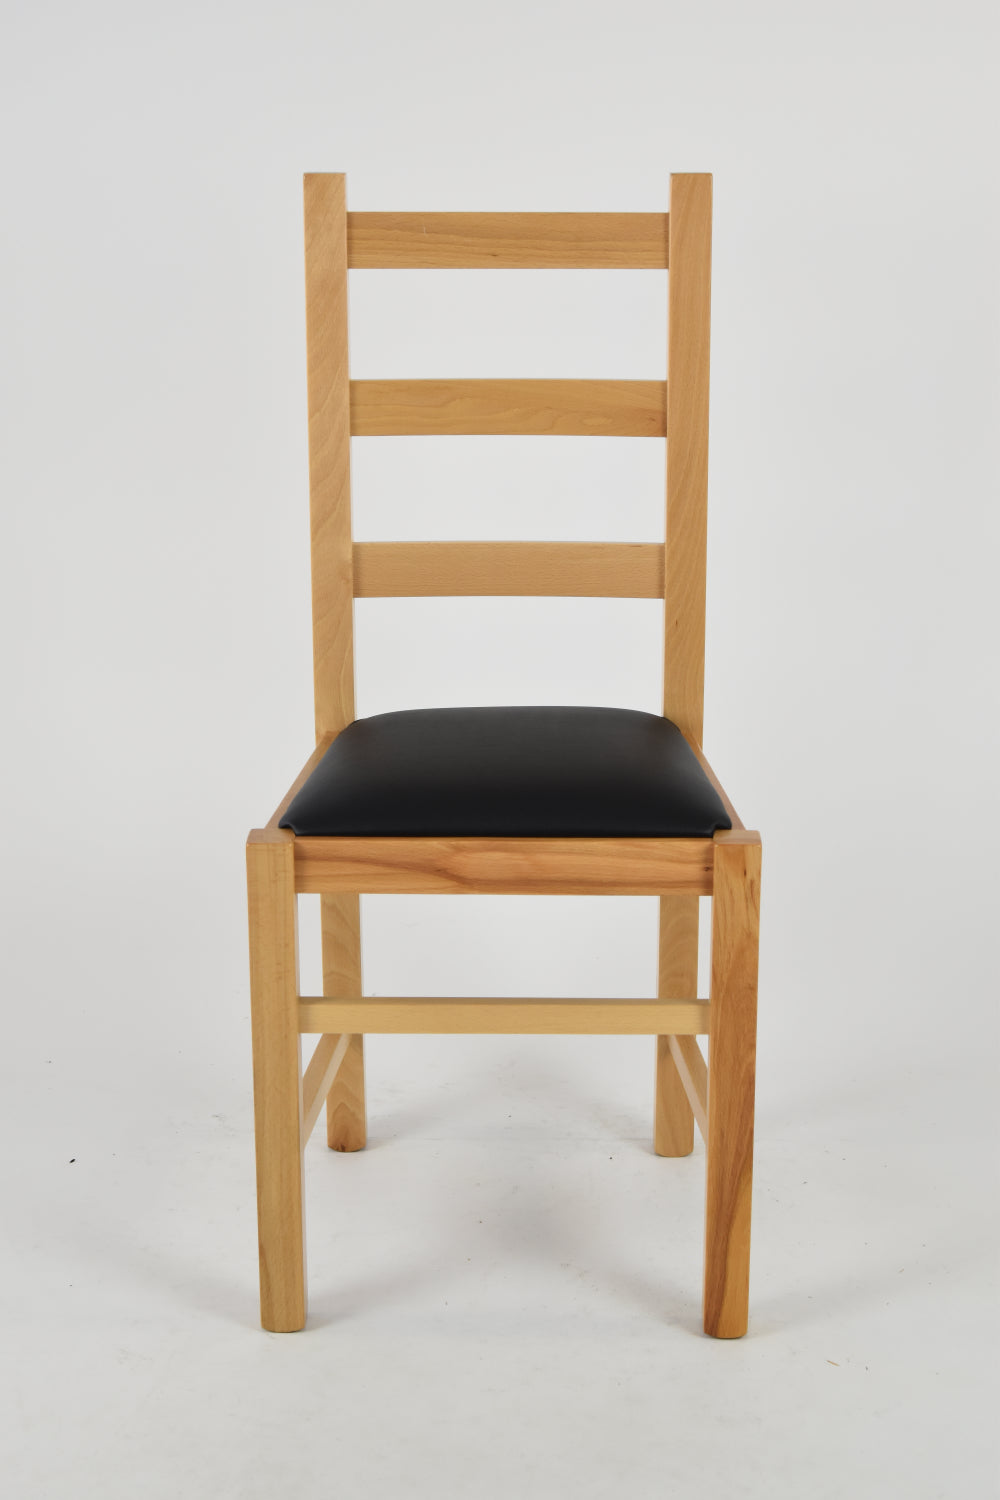 Tommychairs - Set 4 sillas de Cocina y Comedor  Rustica, Estructura en Madera de Haya Color Natural y Asiento tapizado en Polipiel Color Negro